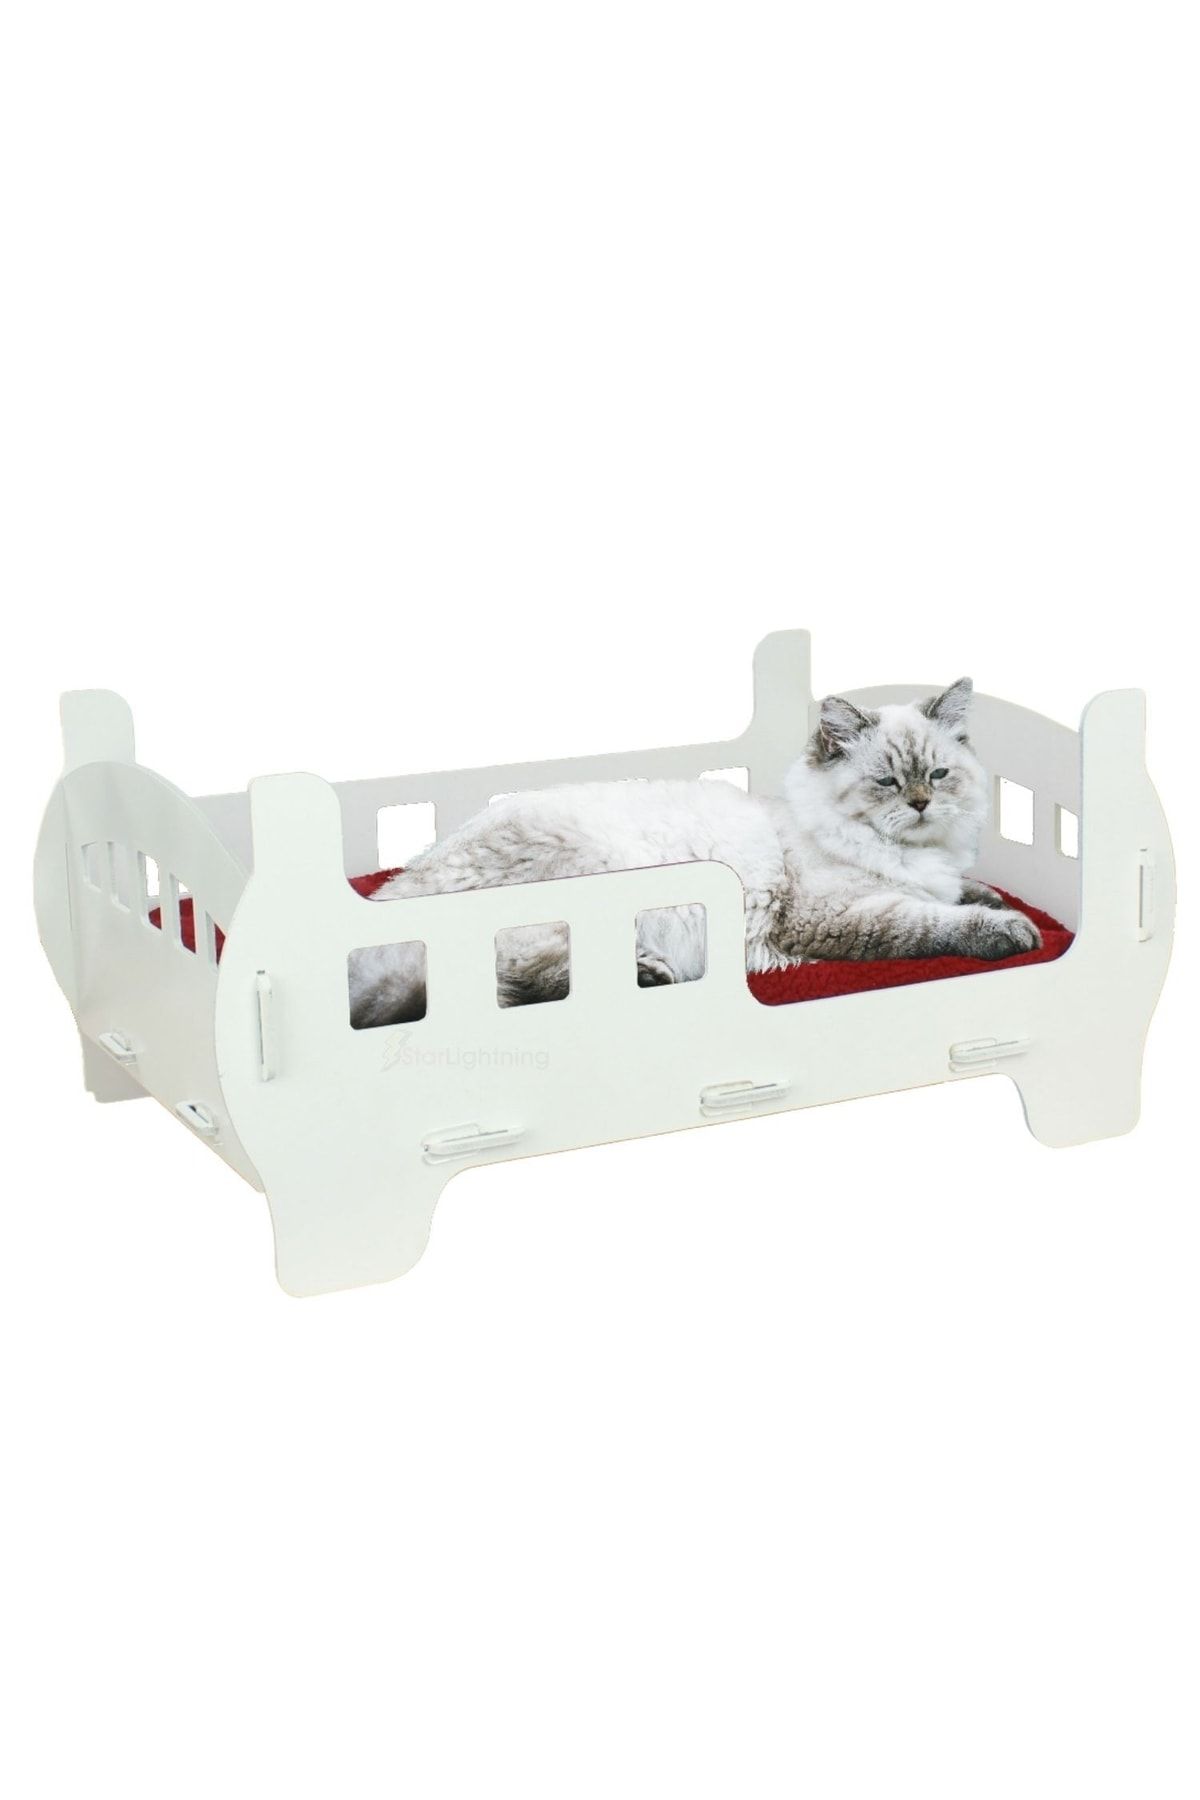 StarLightning Ahşap Büyük Kedi Yatağı Premium Kalite Beyaz Kedi Evi 50x35 Cm Parlak Boyalı Beşik Model